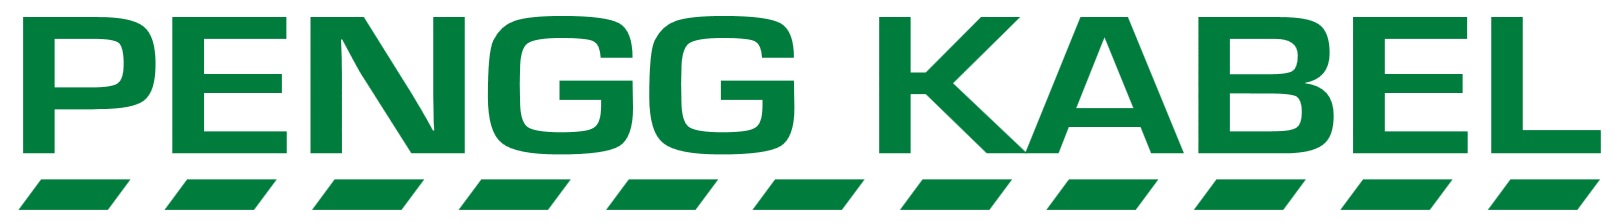 PENGG KABEL GmbH - Logo